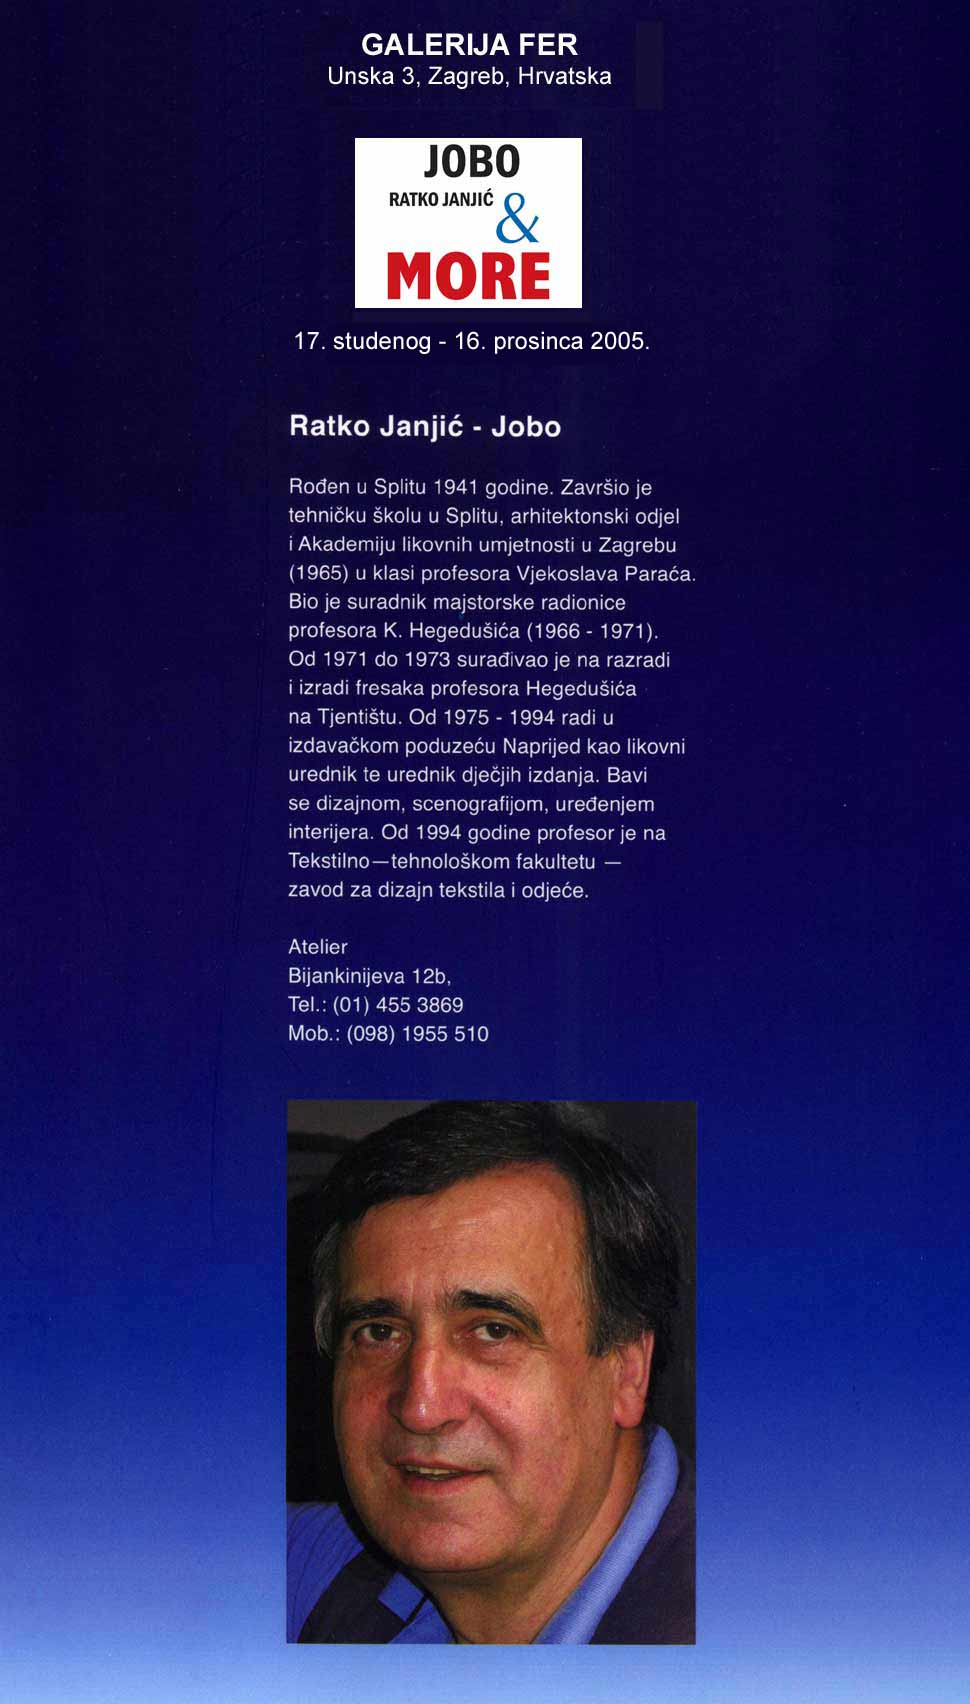 Ratko Janic Jobo